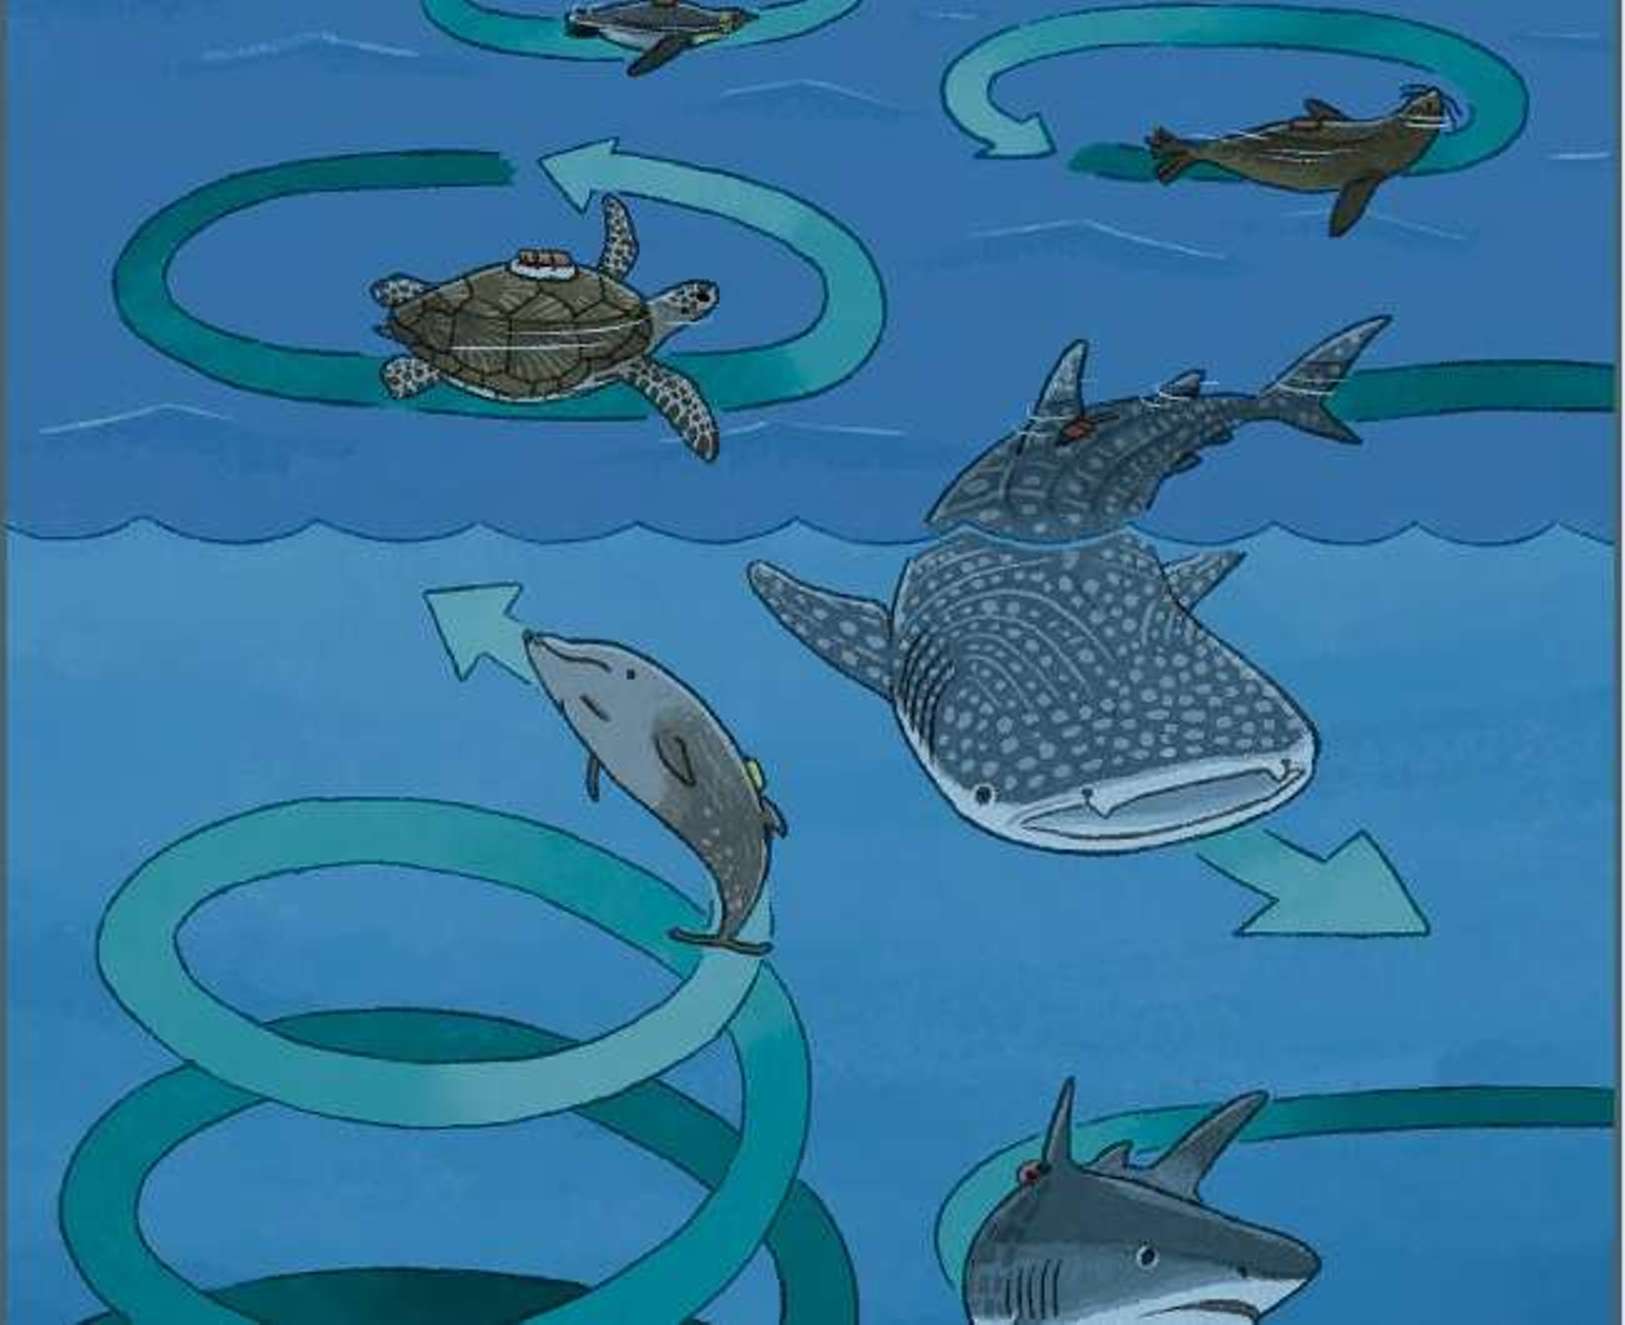 Para la fauna marina, la energía se mueve en círculos